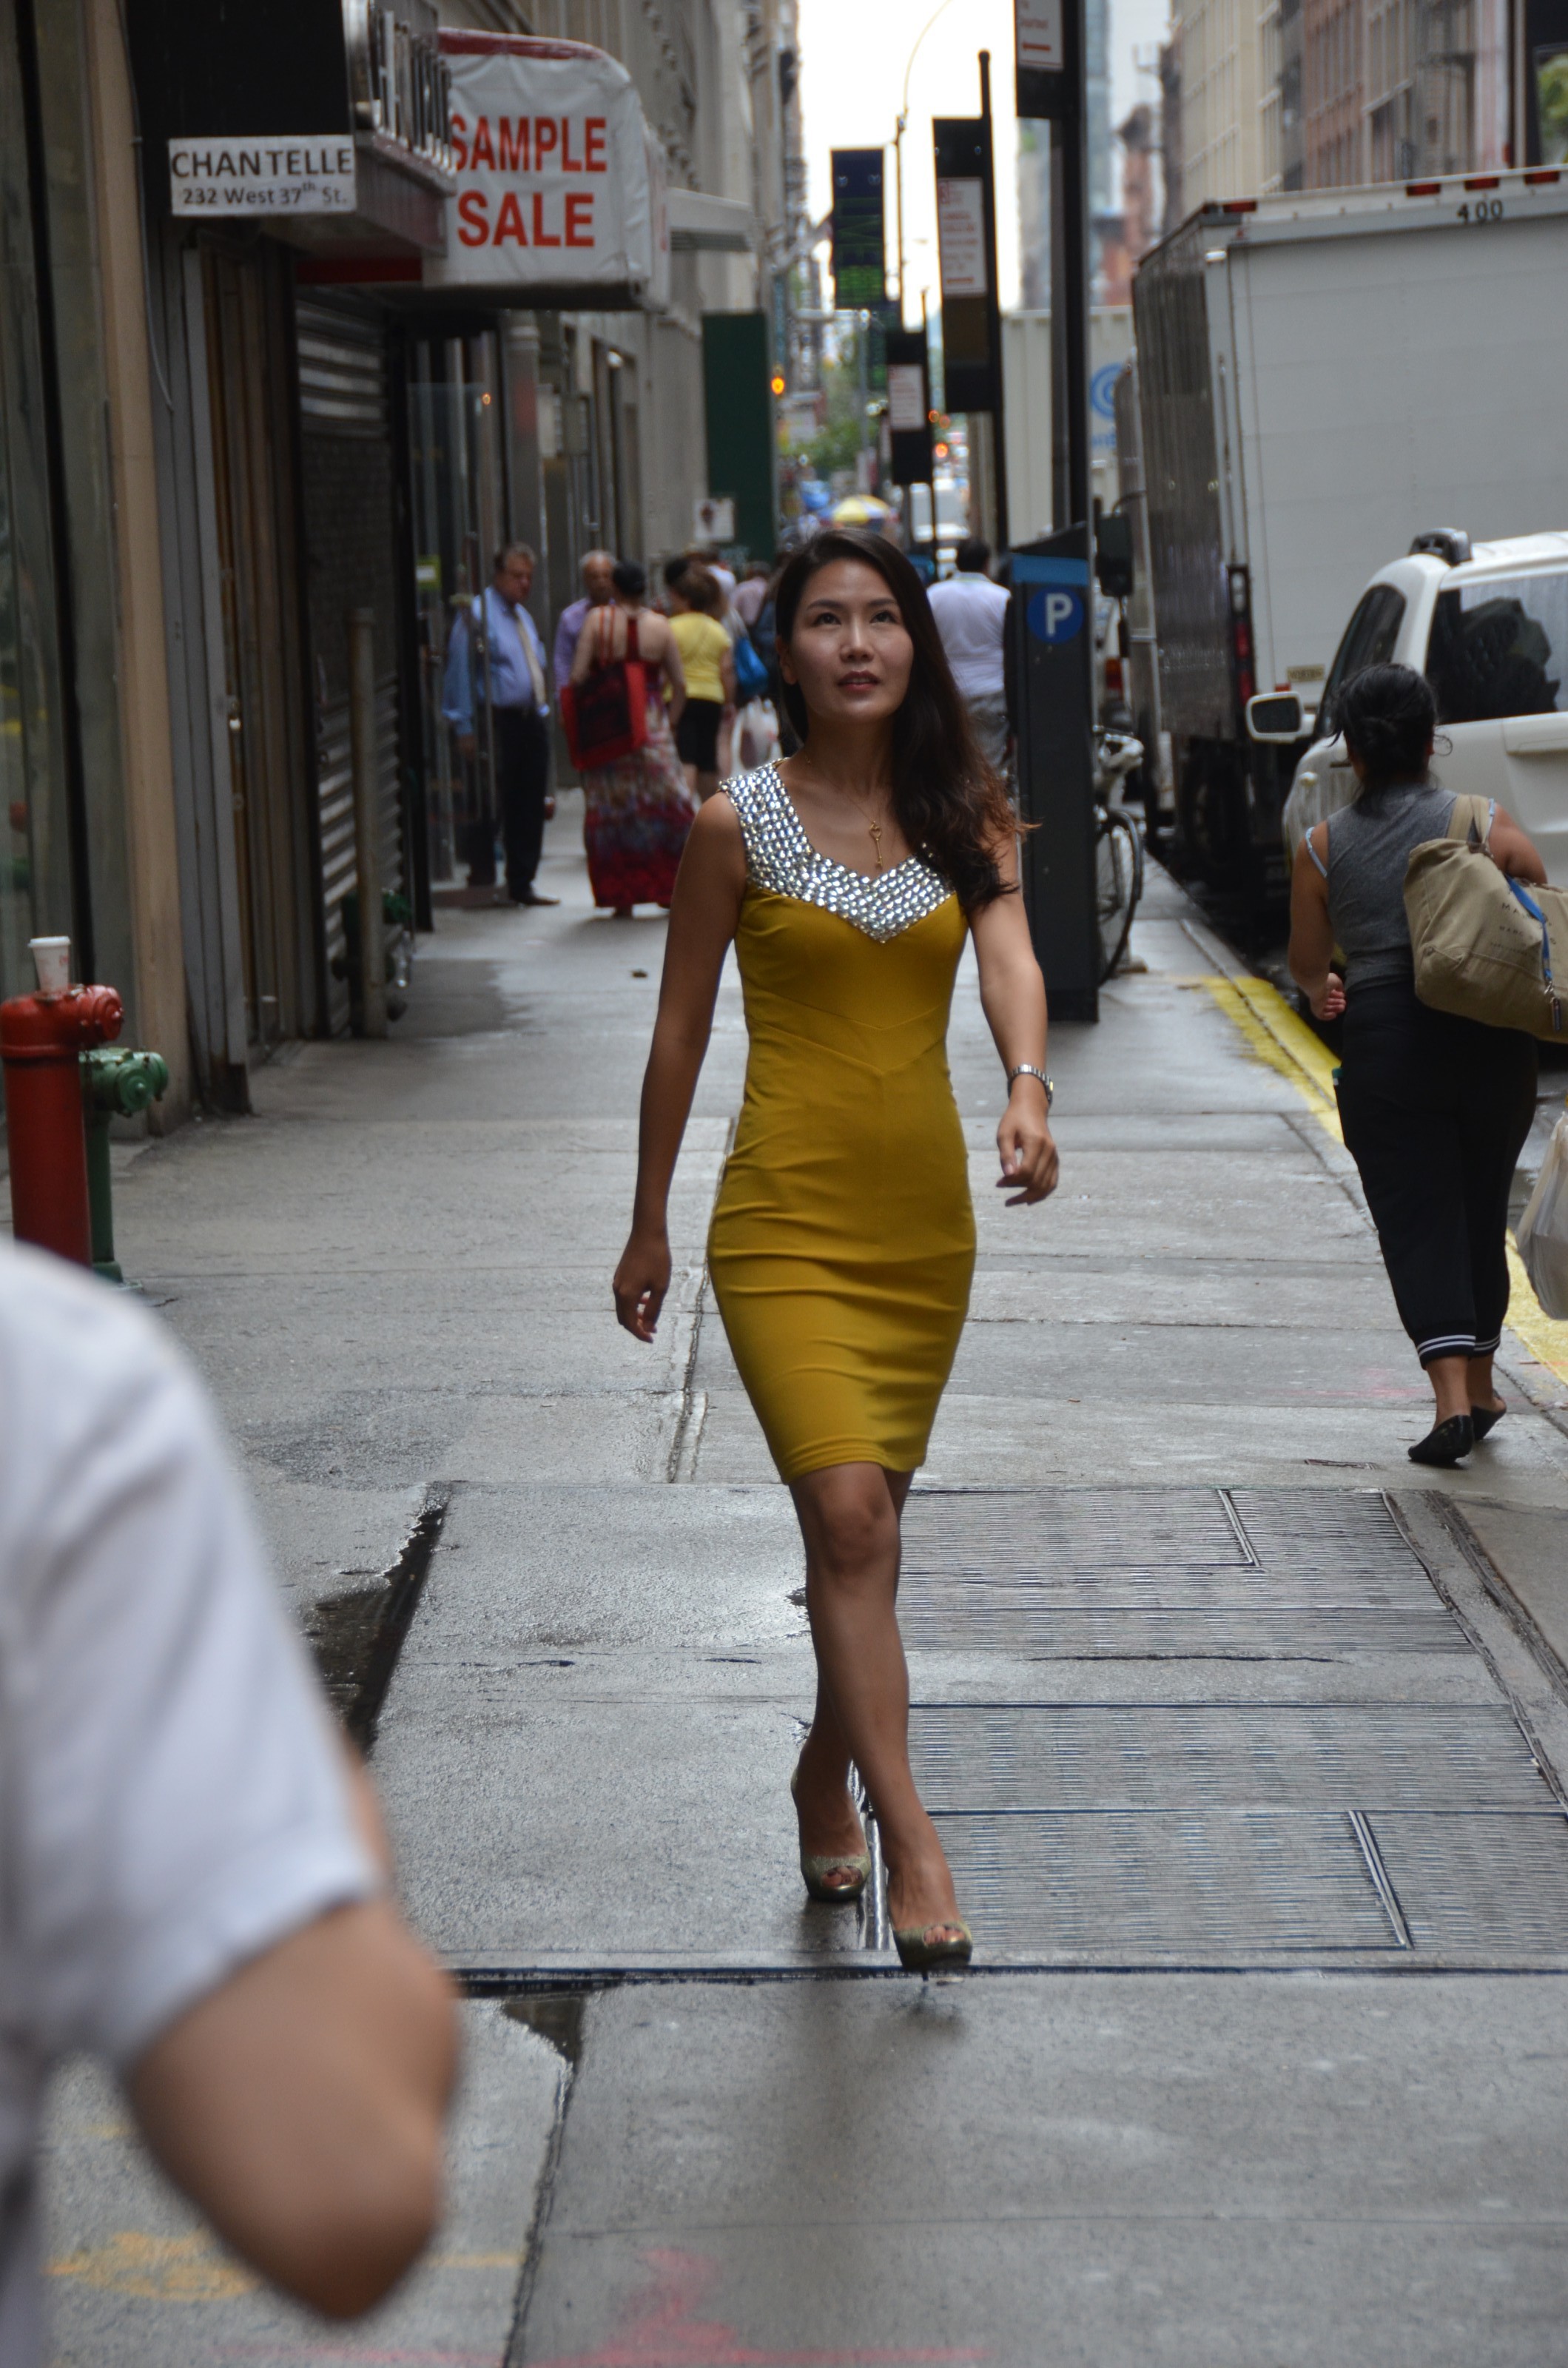 Jinny walking on city street